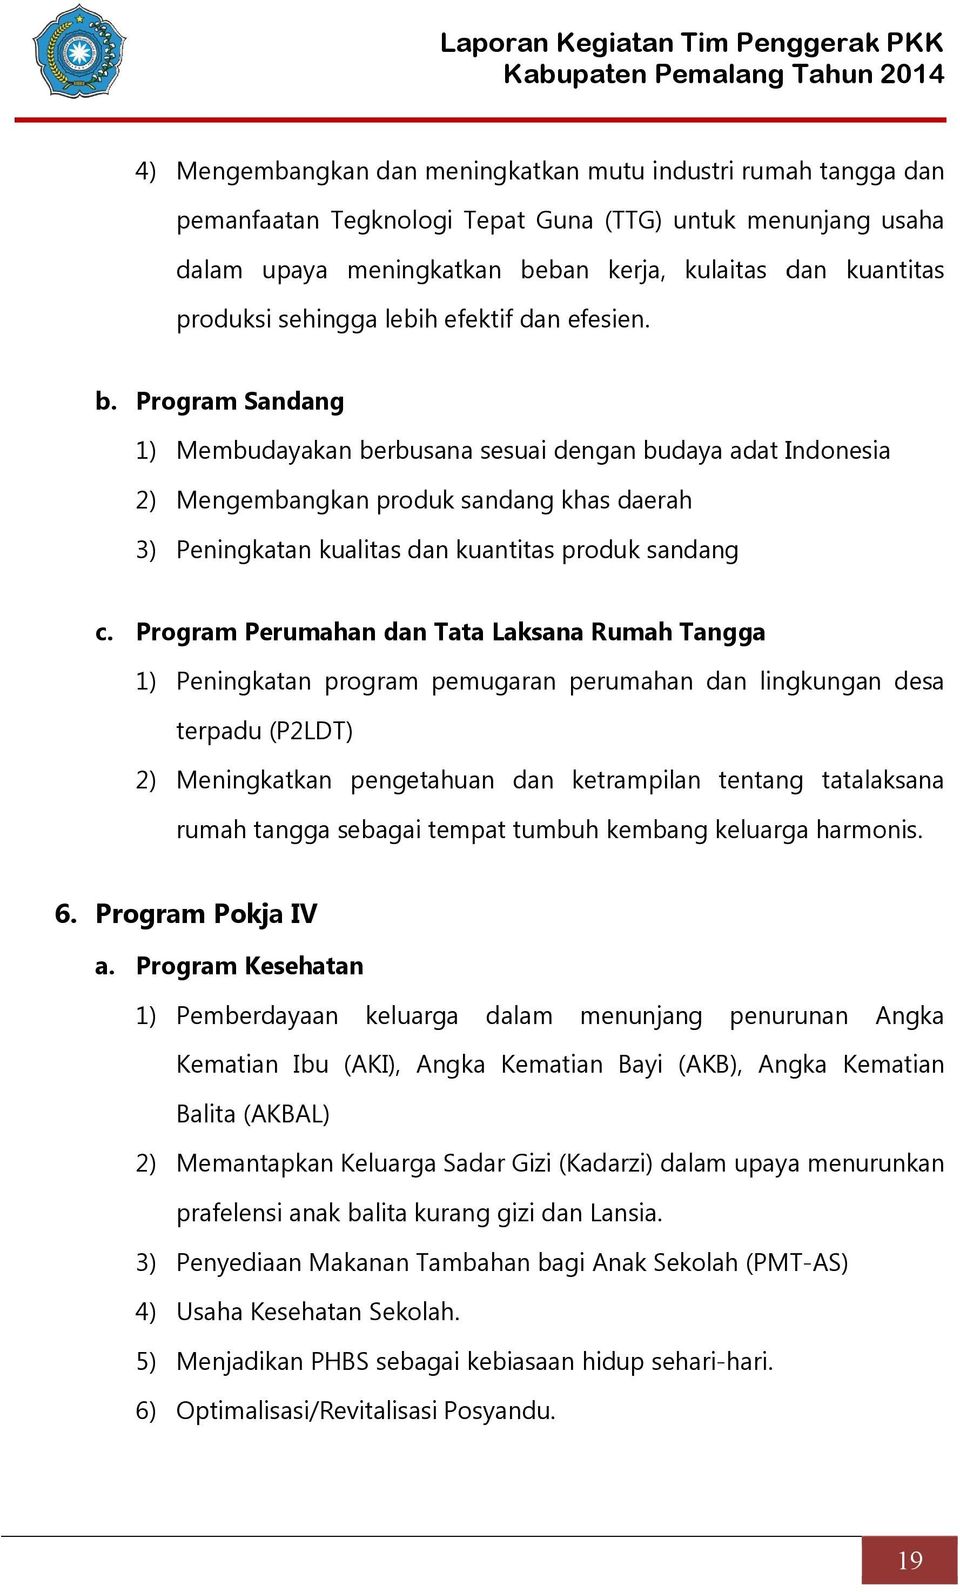 Laporan Kegiatan Tim Penggerak Pkk Kabupaten Pemalang Tahun 2014 Peta Kabupaten Pemalang Pdf Download Gratis